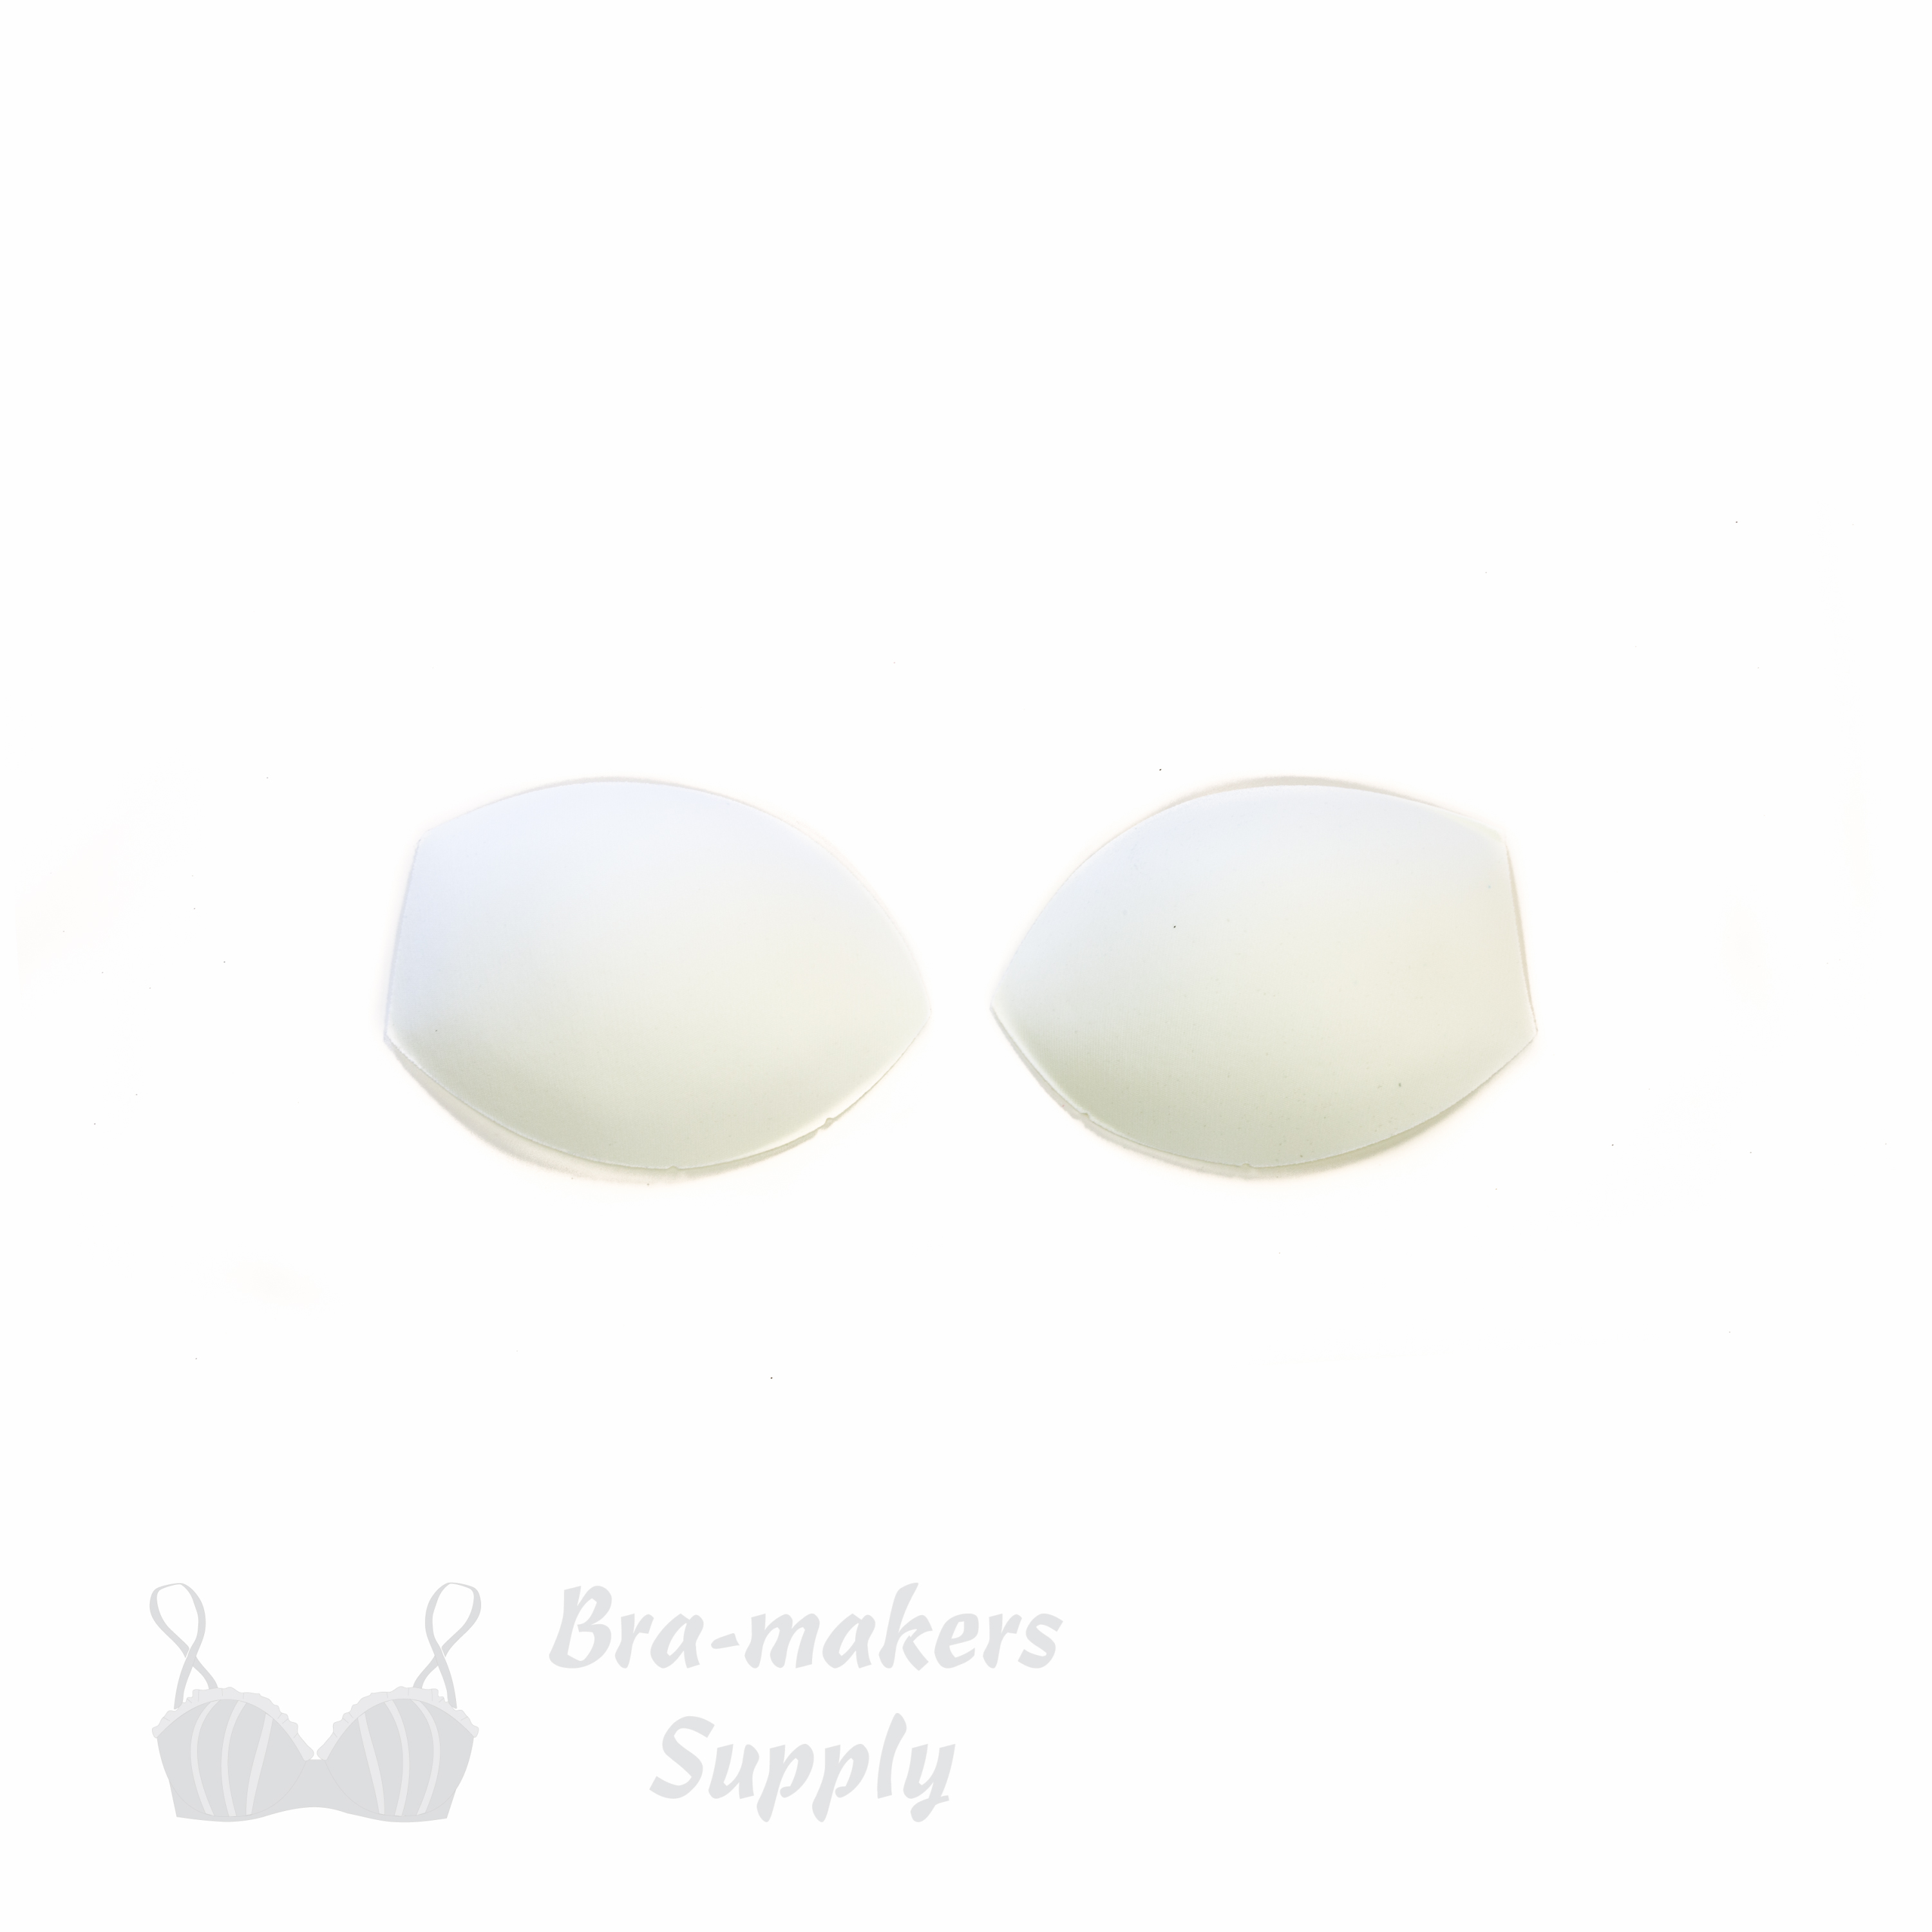 Braza - Sew in Bra & Swimwear Foam Cups - Size D Beige 